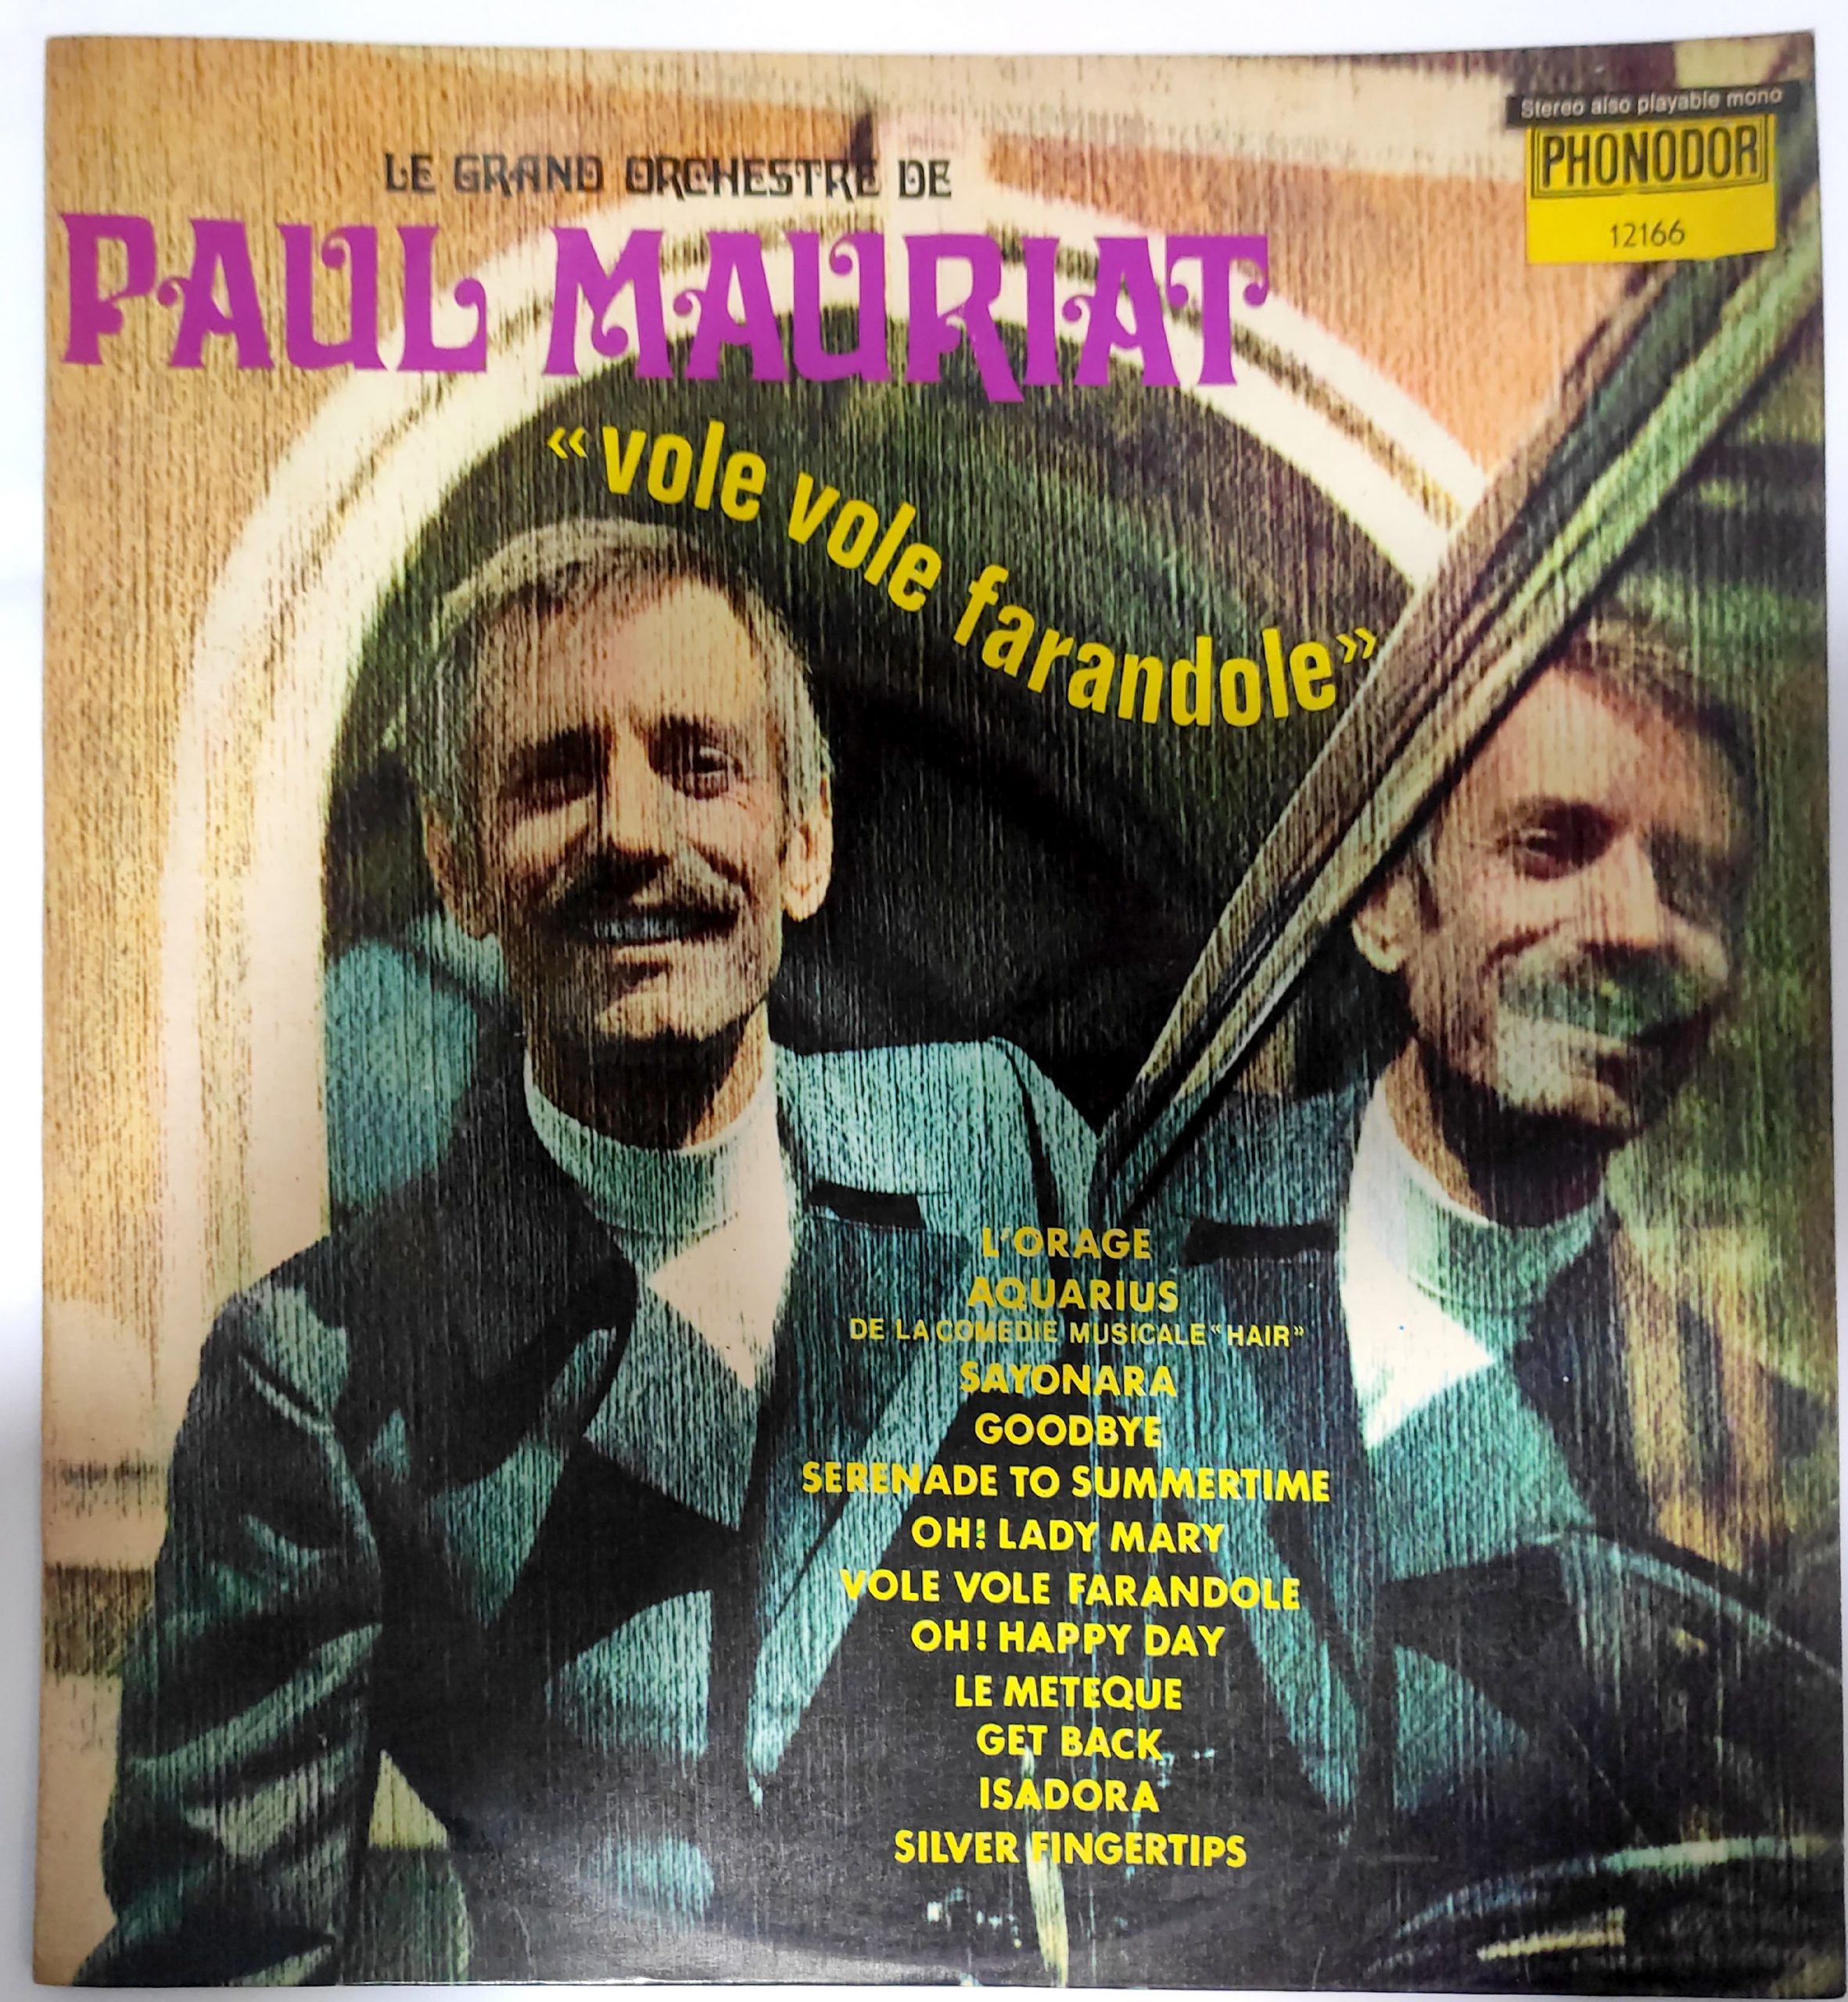 Le Grand Orchestre De Paul Mauriat  – Vole Vole Farandole Vinyl Record 1975 Israel